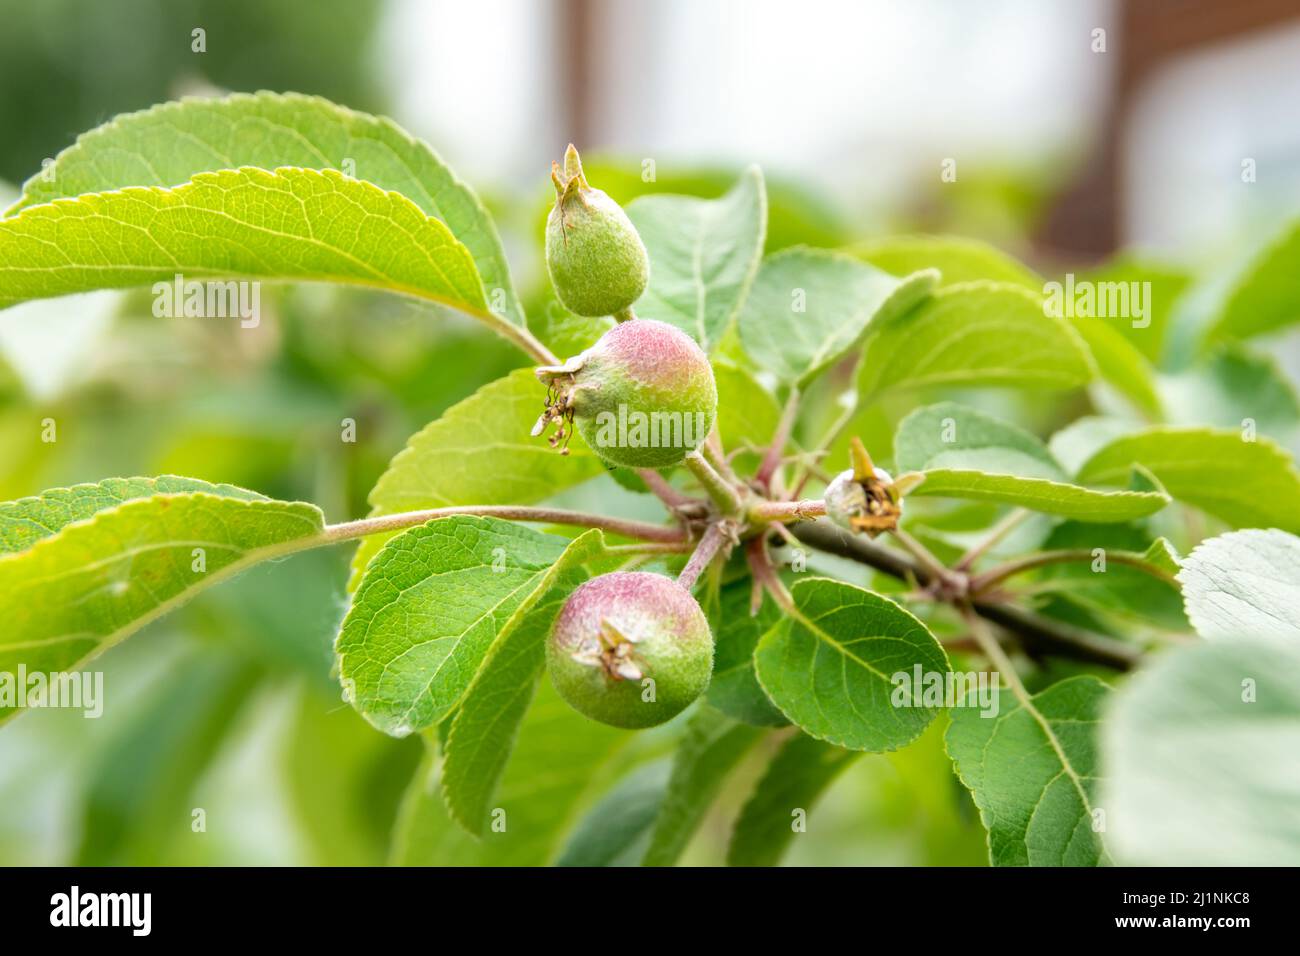 développement des fruits de pomme et protection des fruits contre les maladies et les ravageurs, ainsi que la nutrition et l'arrosage des plantes en temps opportun pour le devel de fruit favorable Banque D'Images